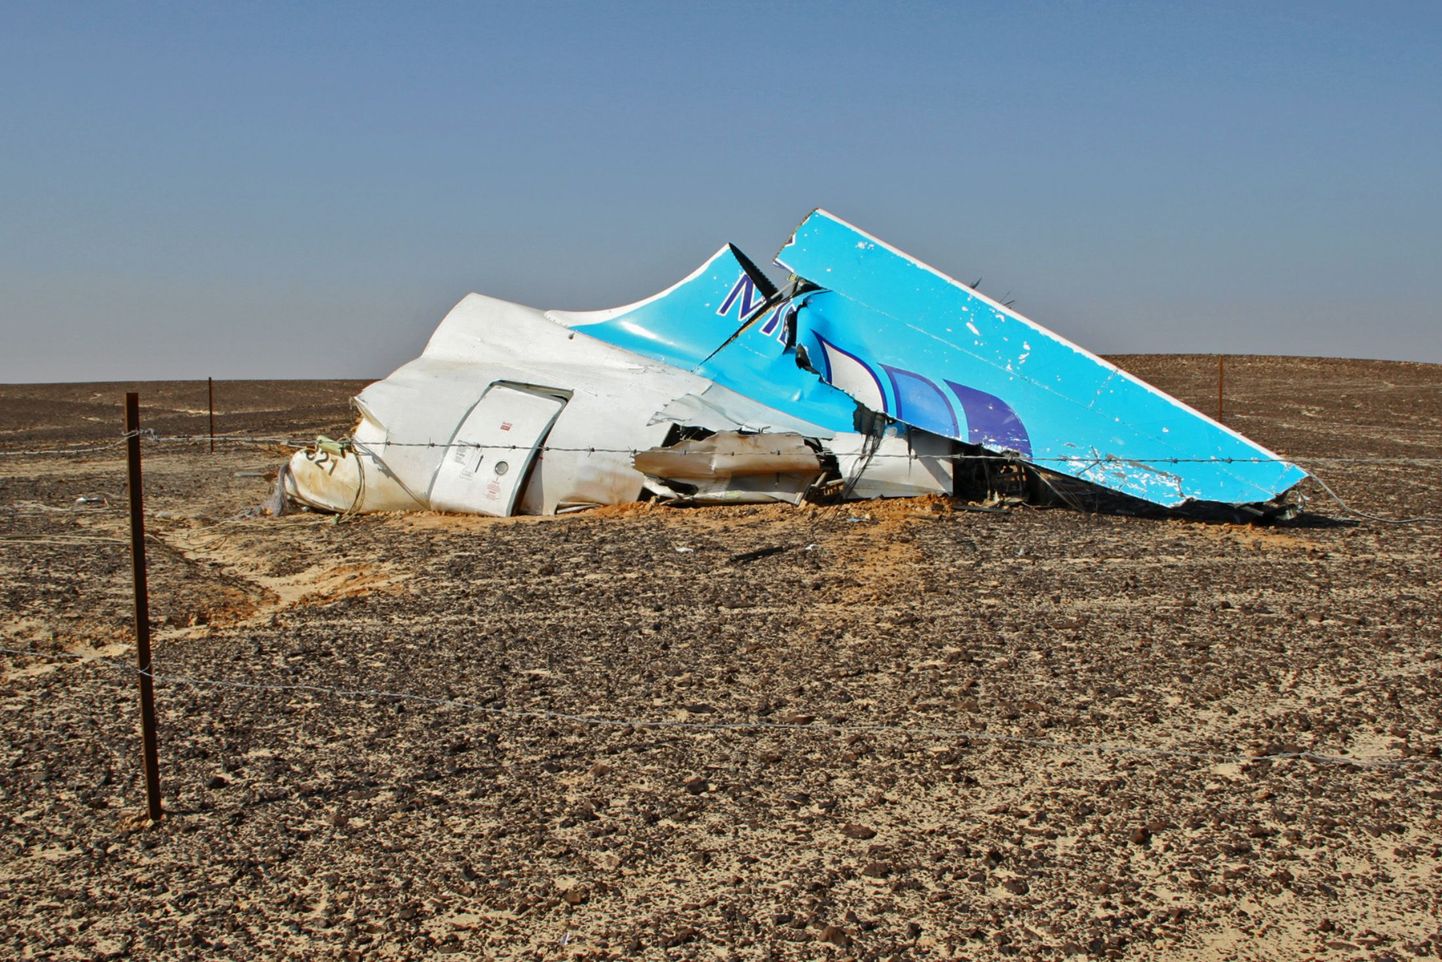 Самолет A321 российской авиакомпании «Когалымавиа», выполнявший рейс Шарм-эш-Шейх - Санкт-Петербург, потерпел катастрофу 31 октября спустя около получаса после вылета.